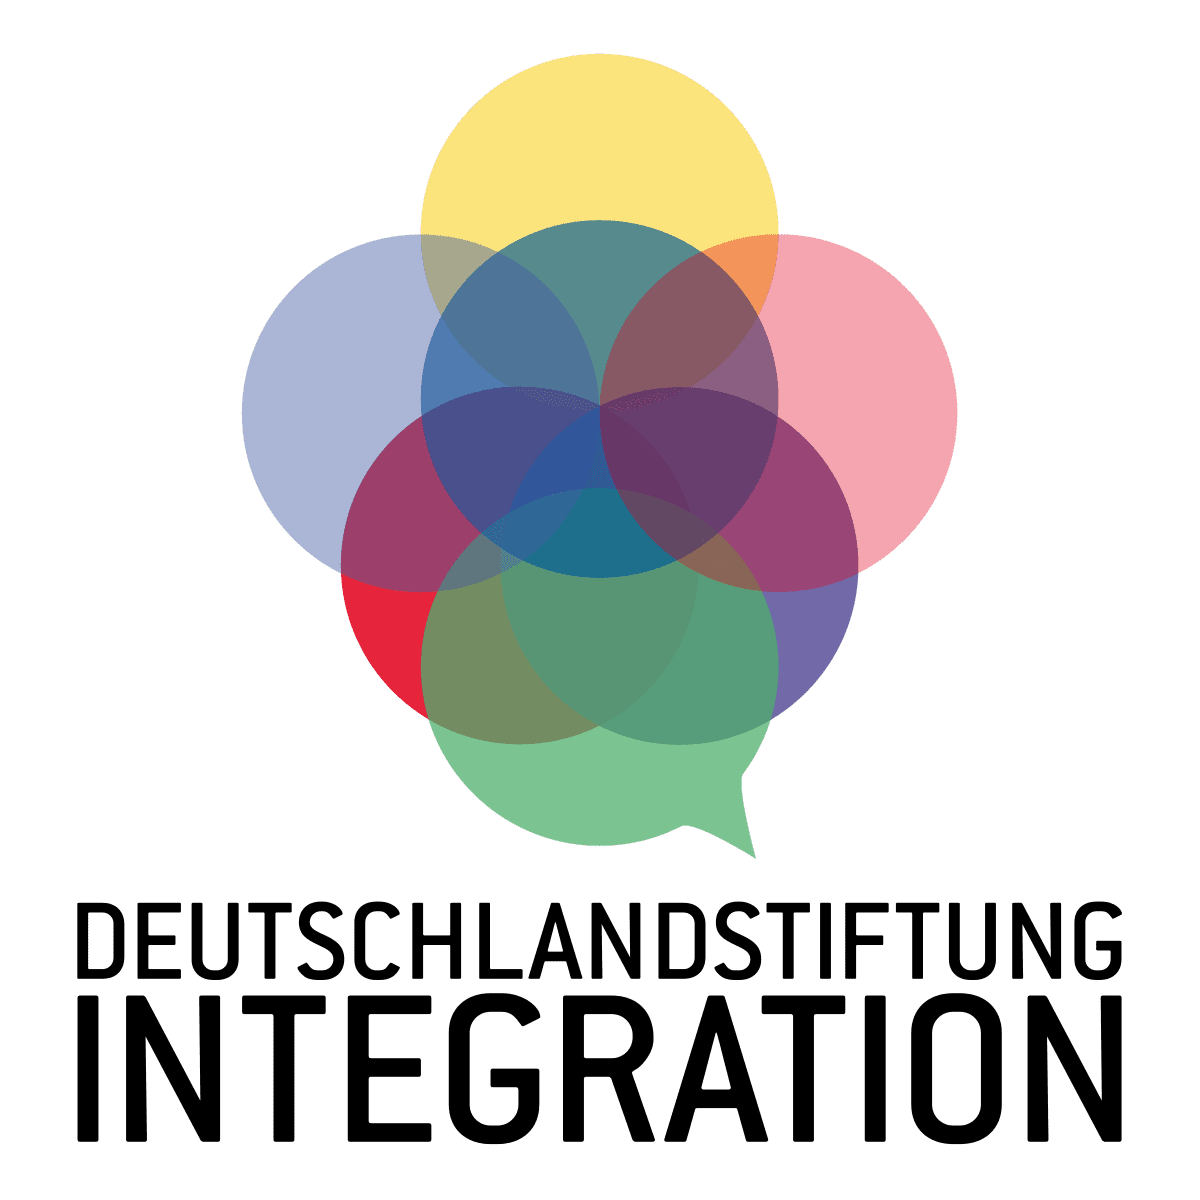 Deutschlandstiftung Integration logo